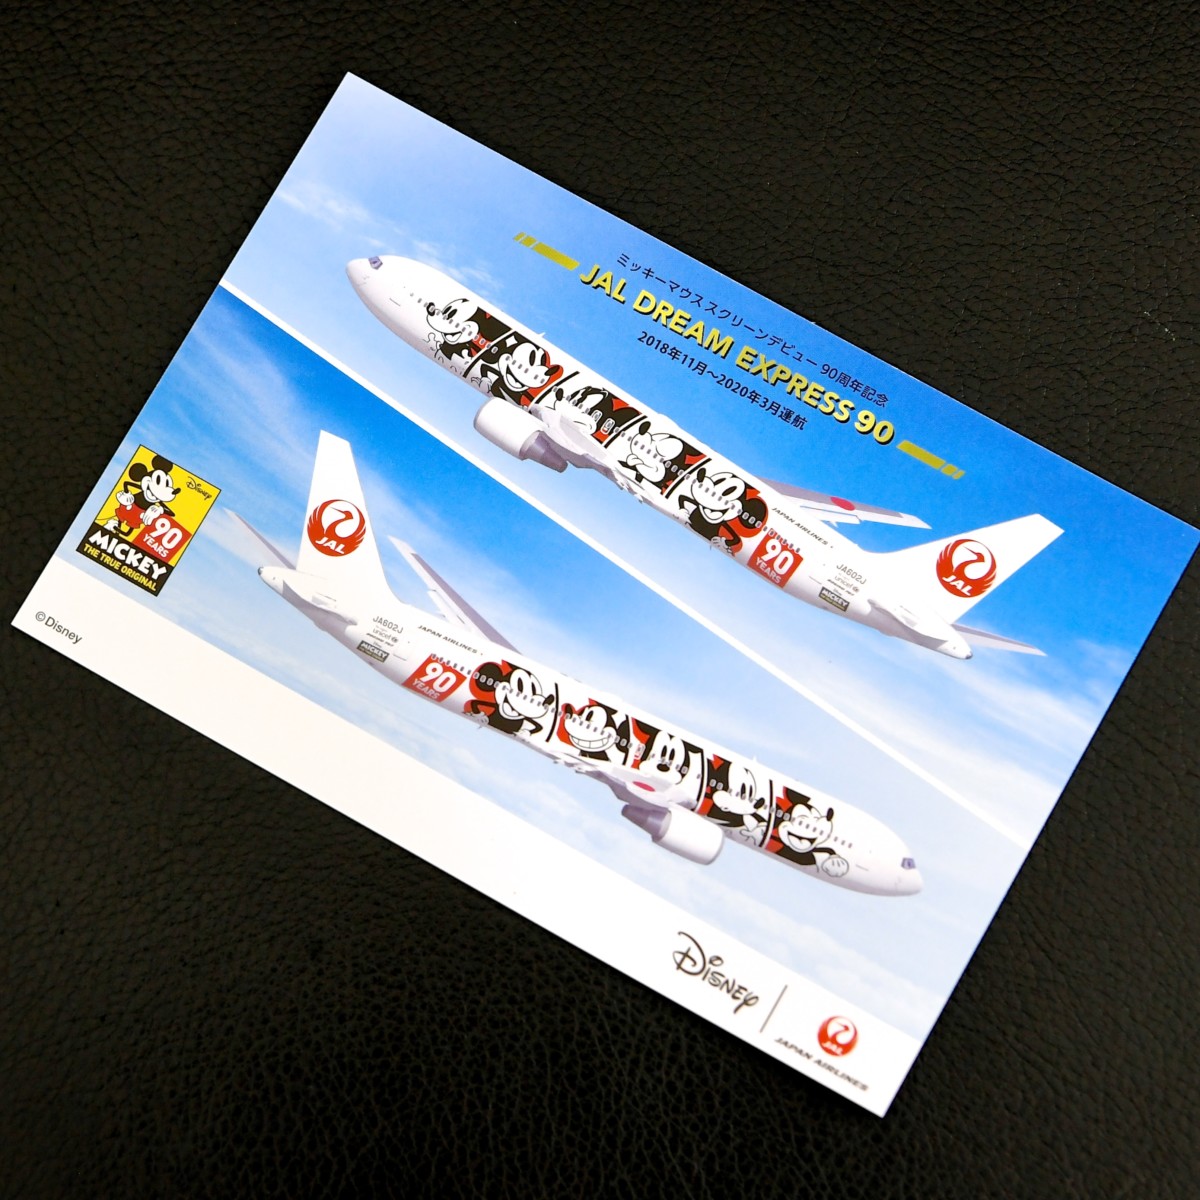 ミッキー90周年デザイン飛行機で空の旅を Jal Dream Express 90 日帰りチャーターフライトツアー レポート